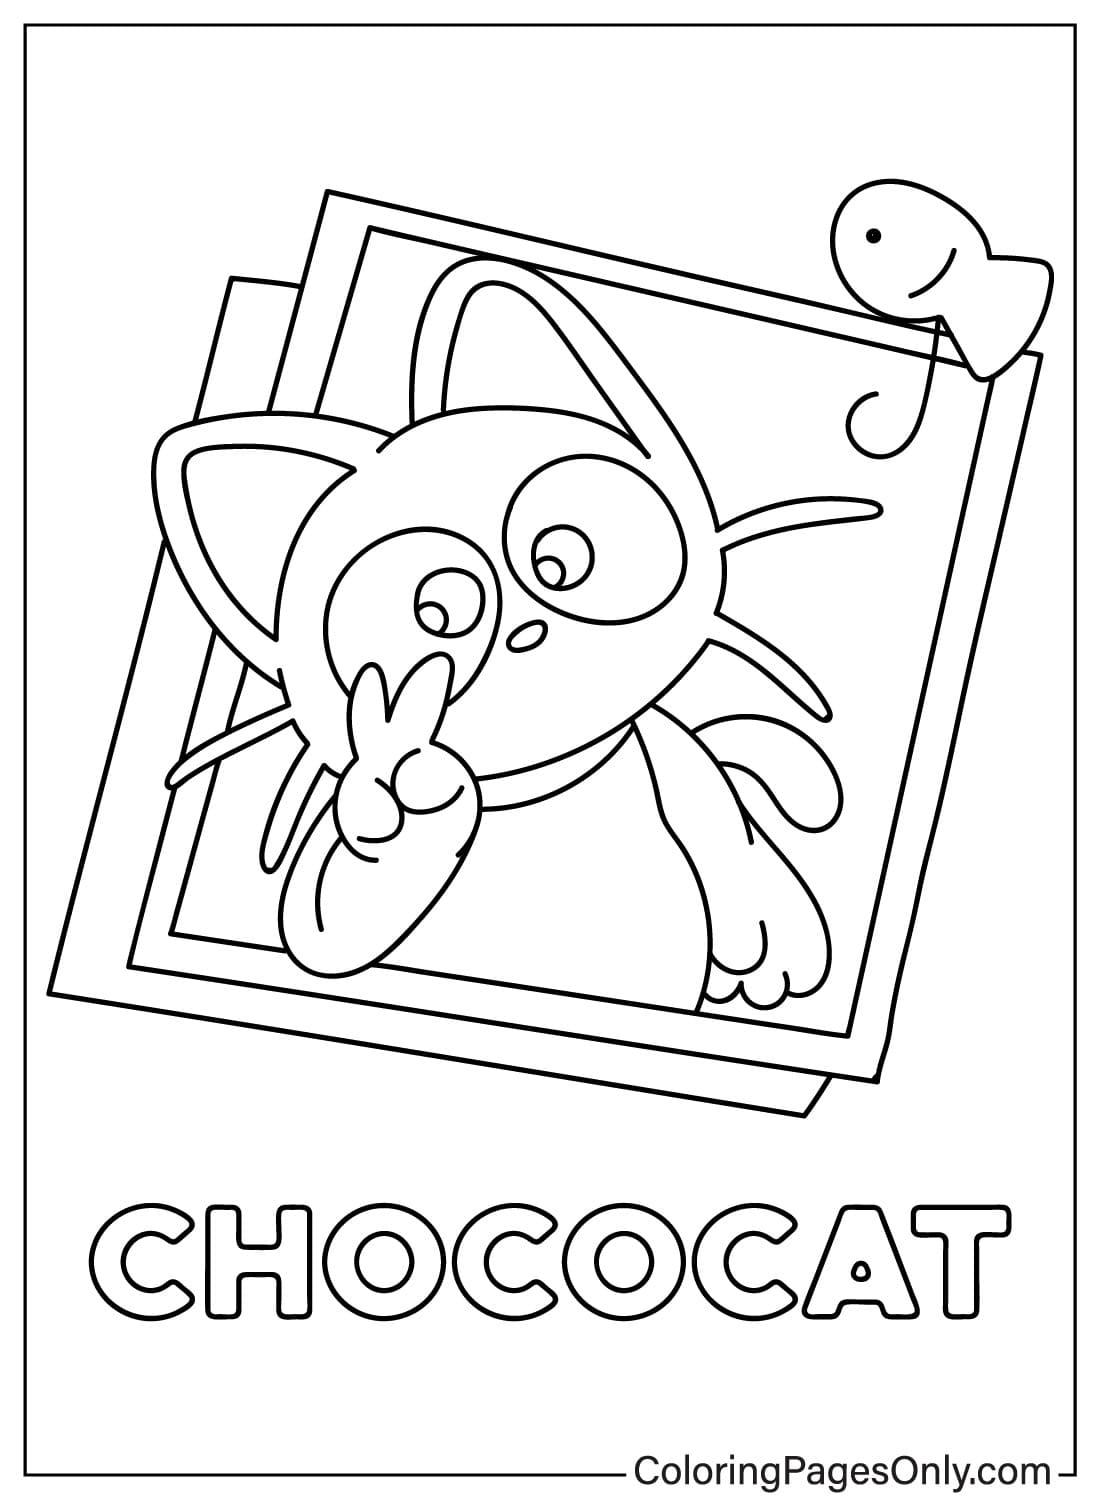 Imagens de páginas para colorir de Chococat de Chococat